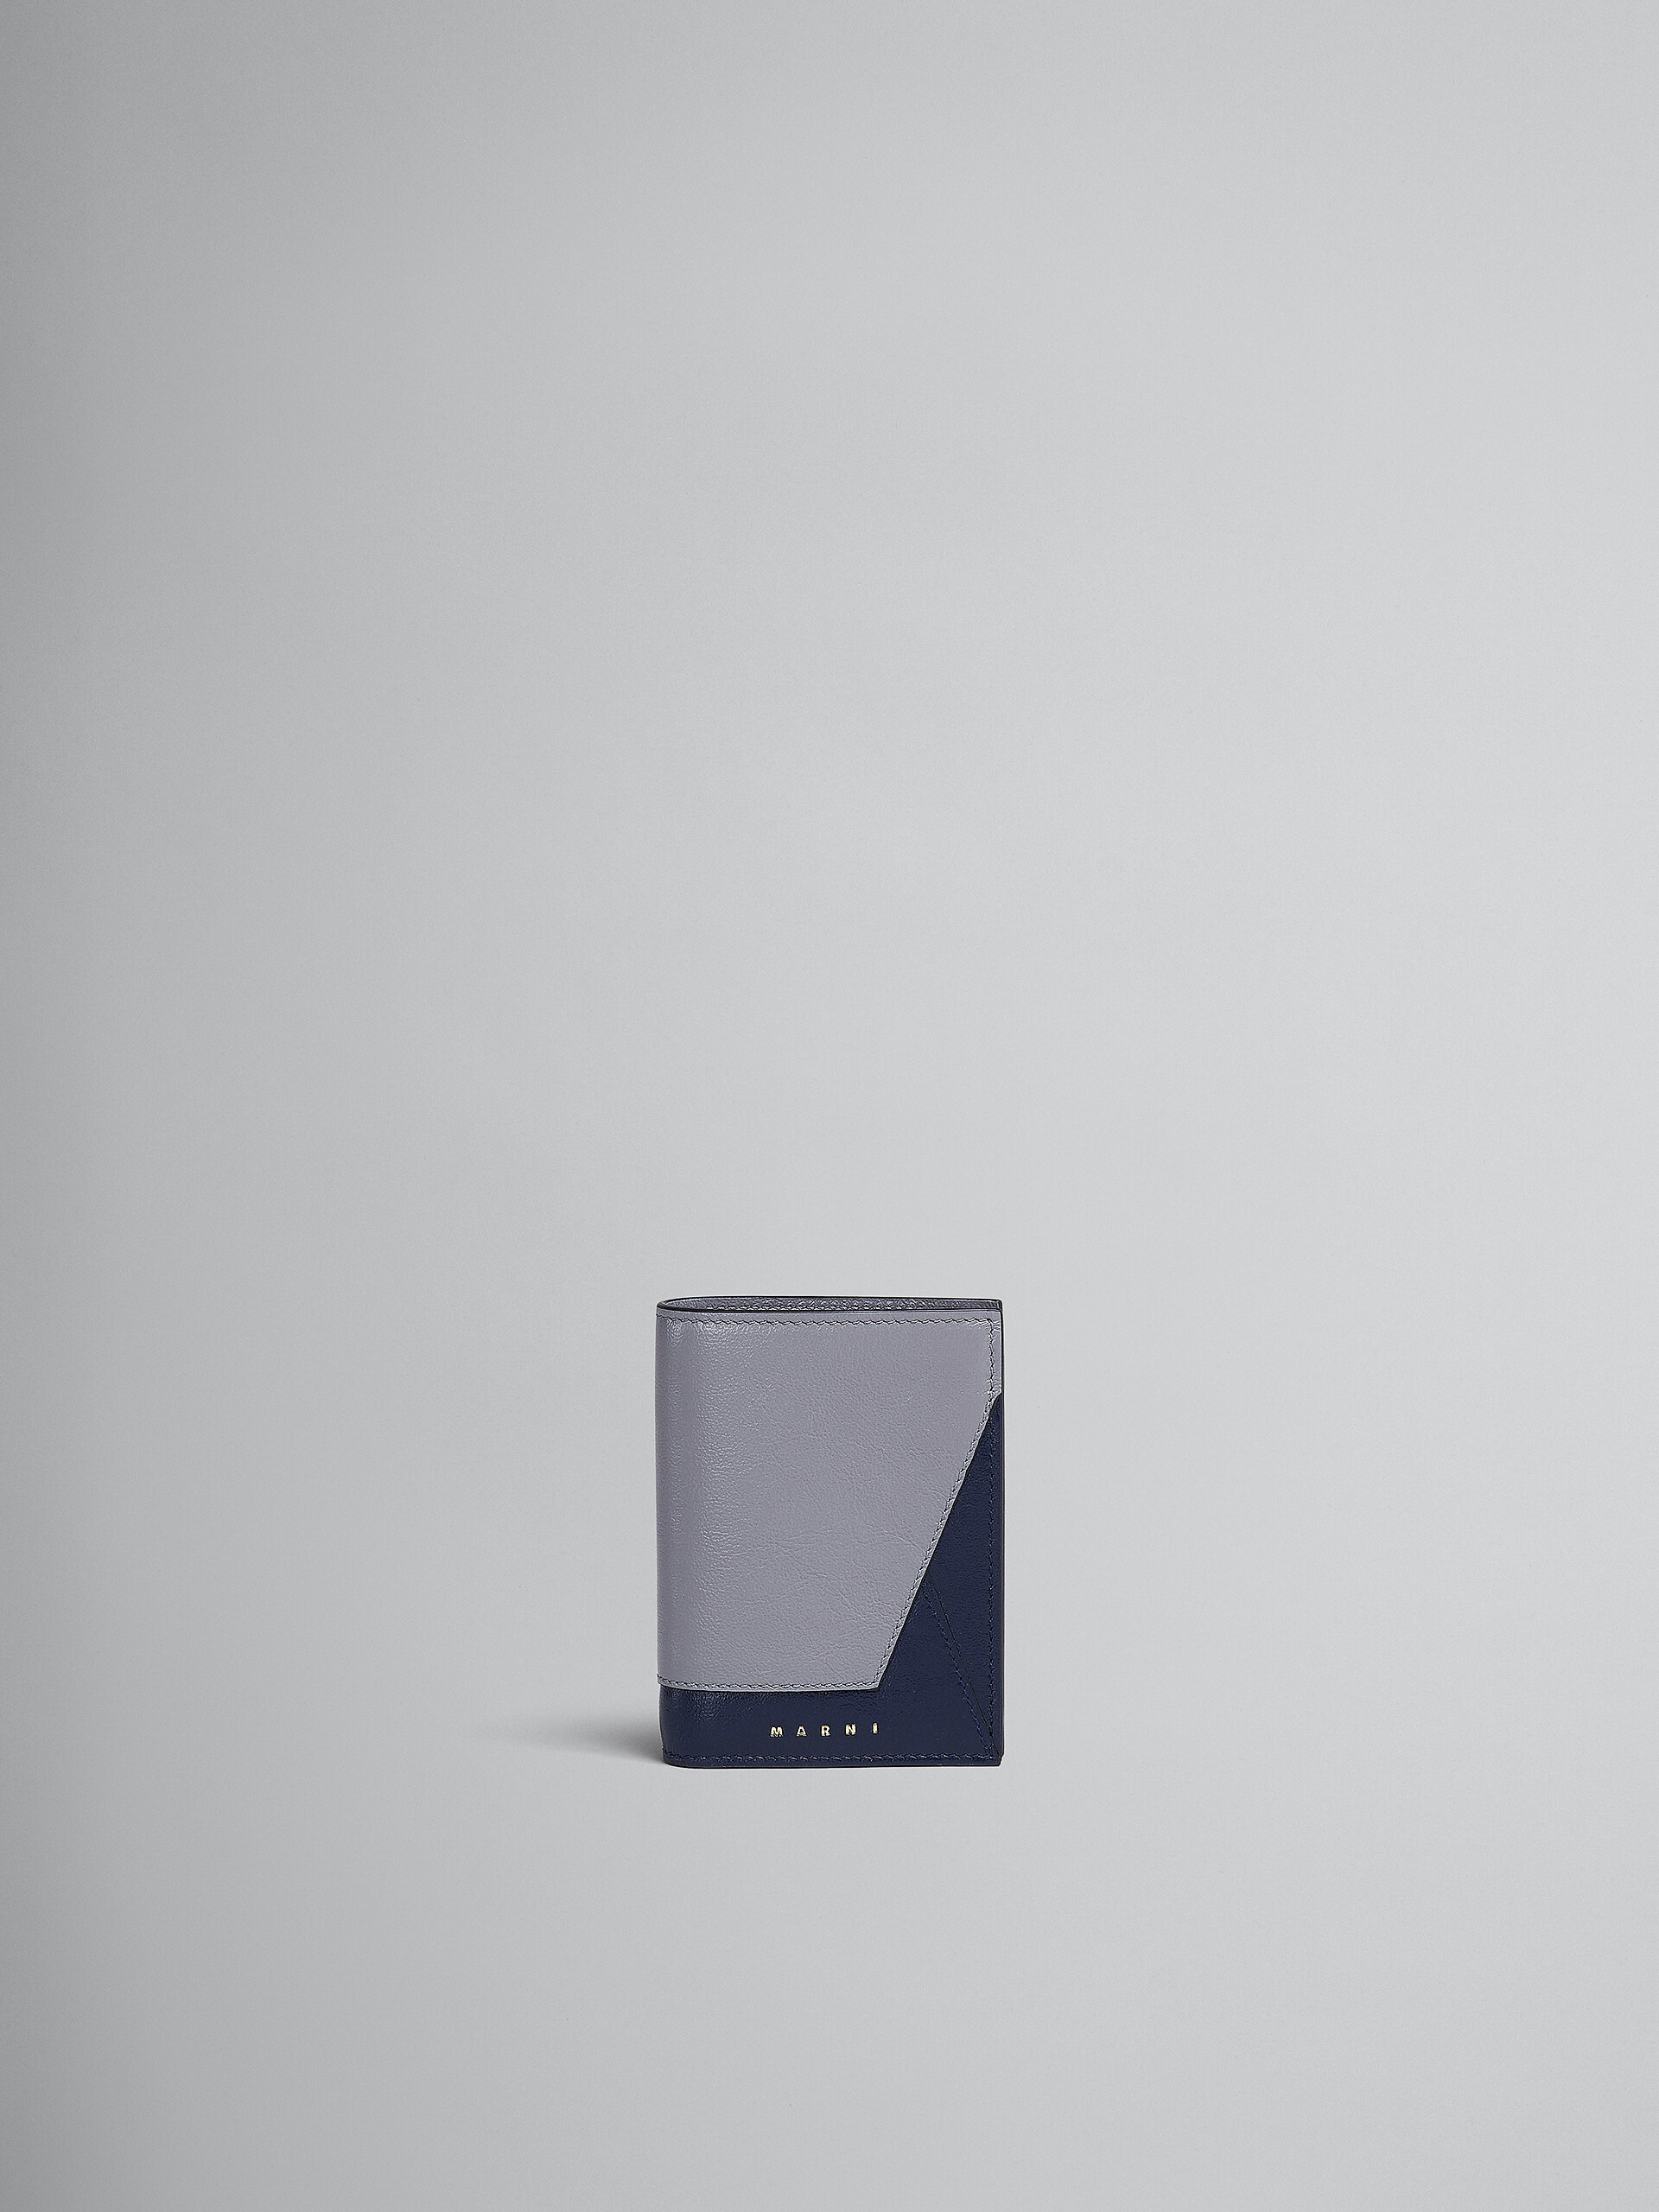 Zweifache Faltbrieftasche aus Leder in Grau und Blau - Brieftaschen - Image 1